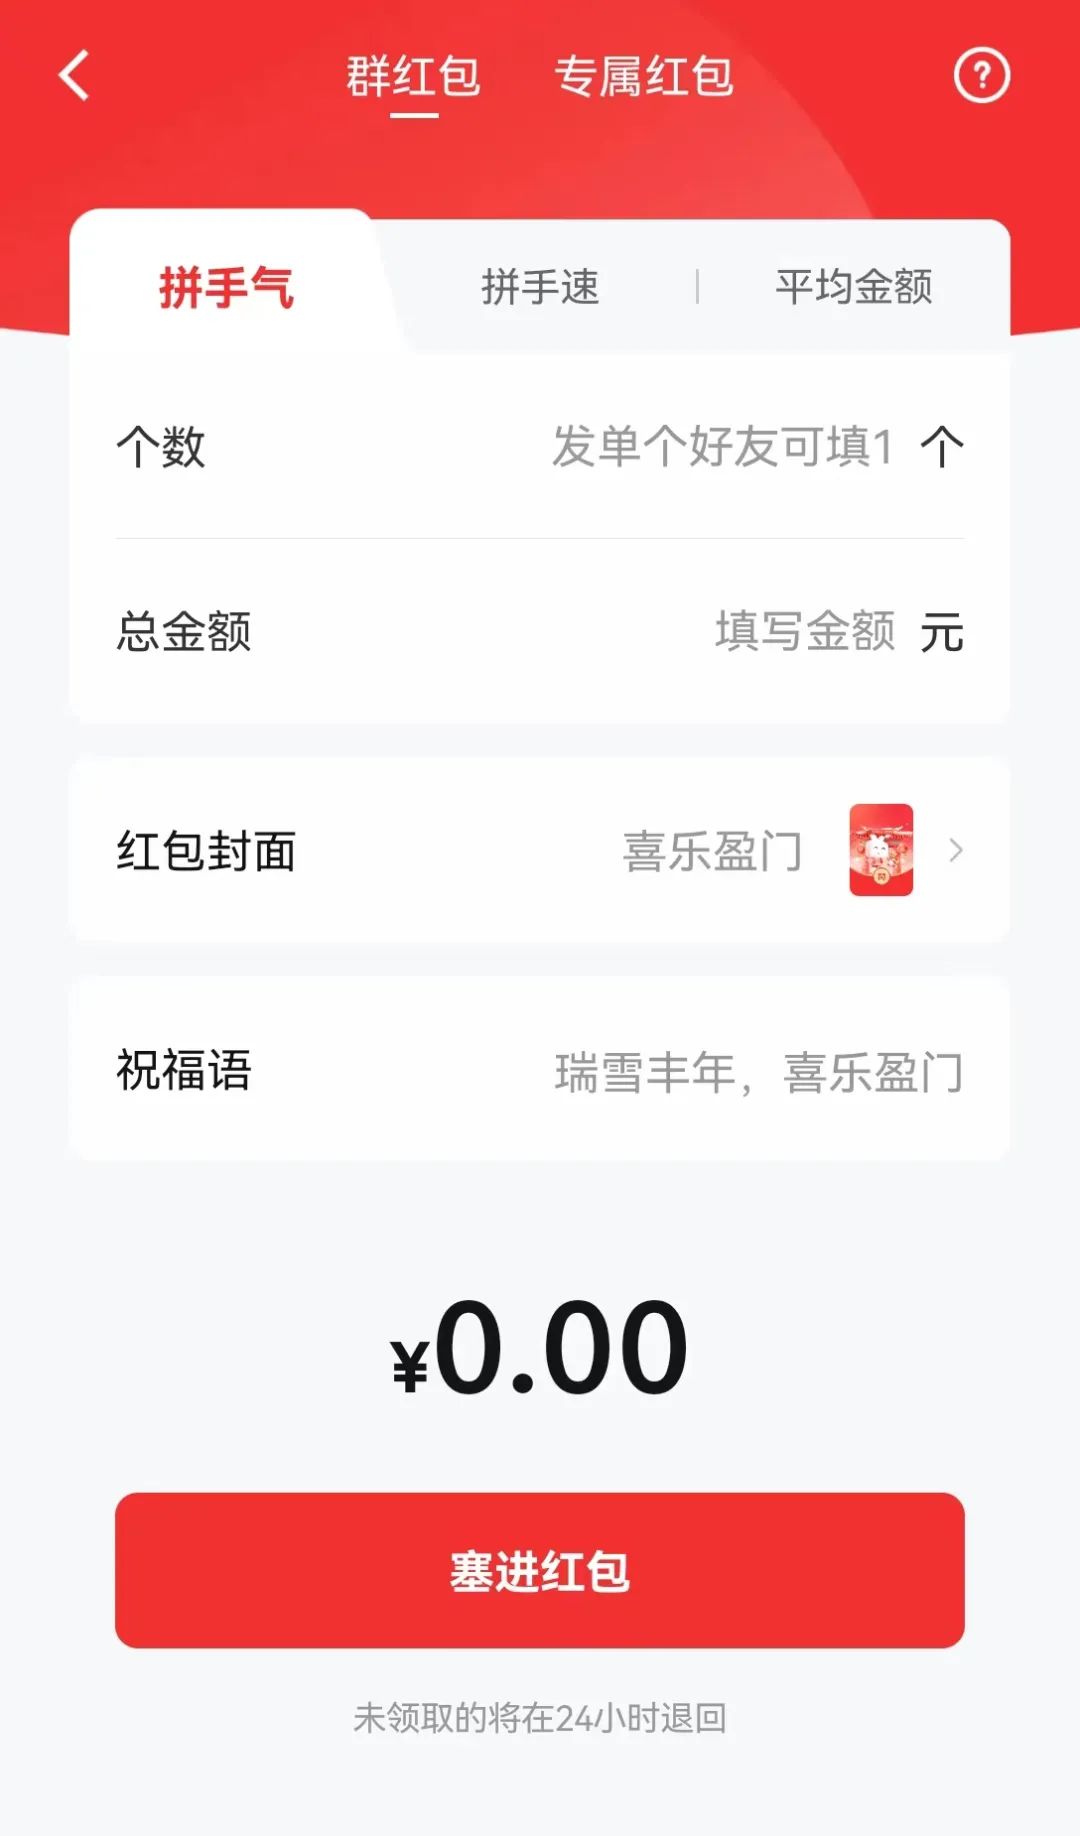 事关春节 数字人民币App上新